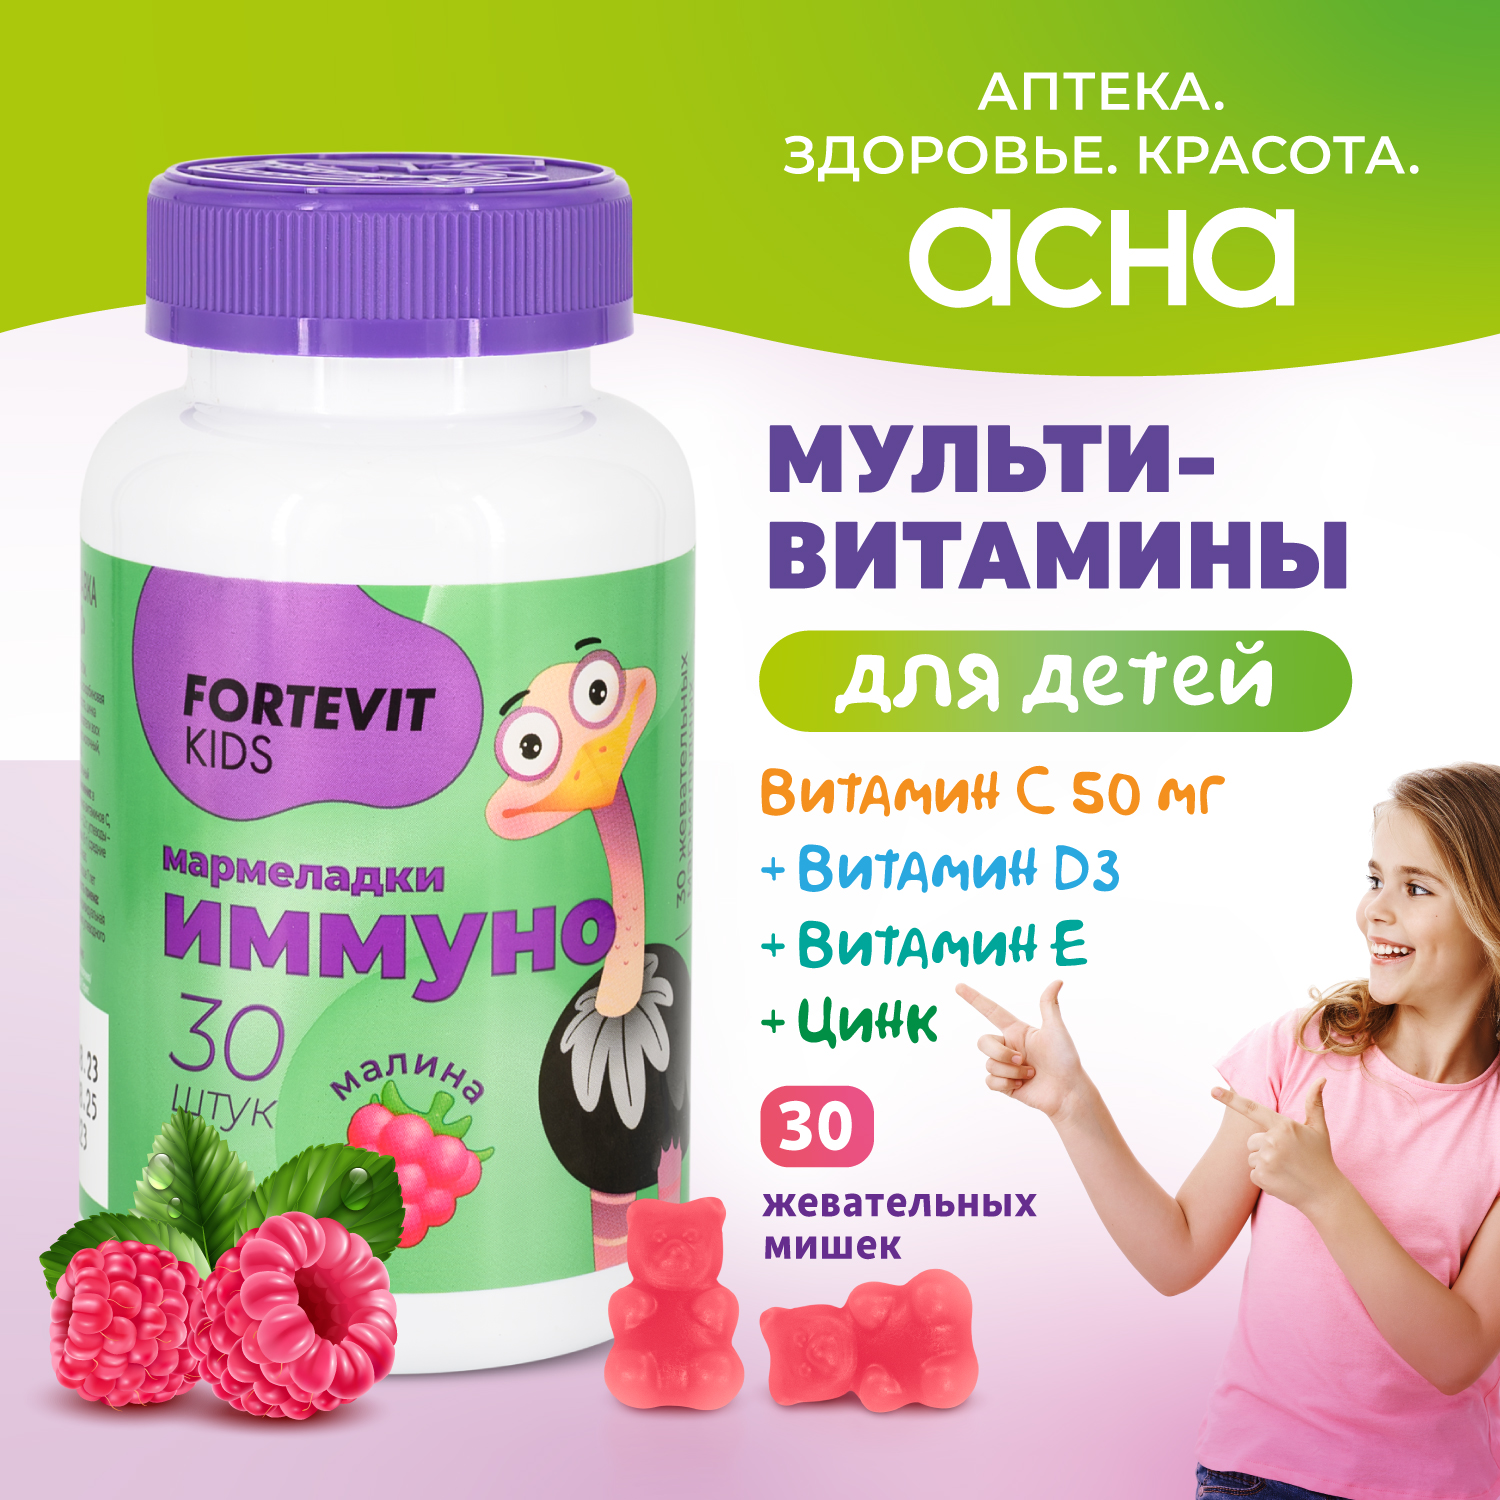 Купить Детские витамины Fortevit Kids мармеладки Иммуно жевательные со вкусом Малины, 30 штук